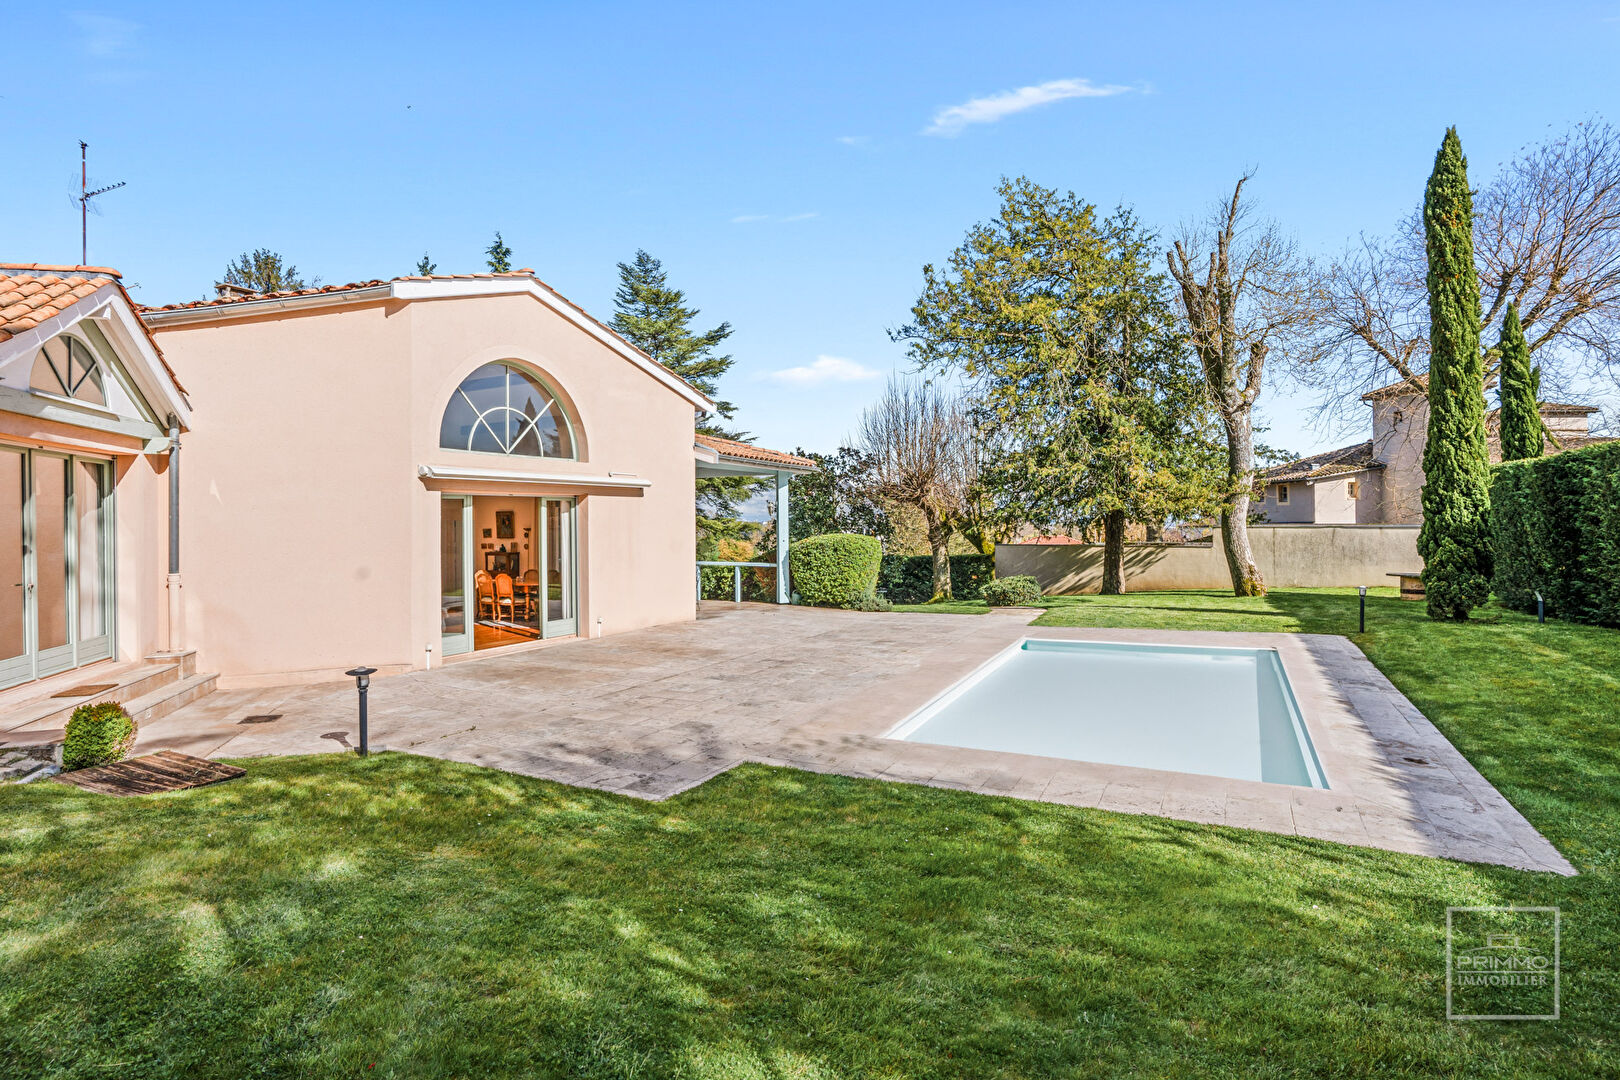 Saint Cyr au Mont d’Or, Belle Maison familiale de 370m² habitables sur 2347m² de jardin.